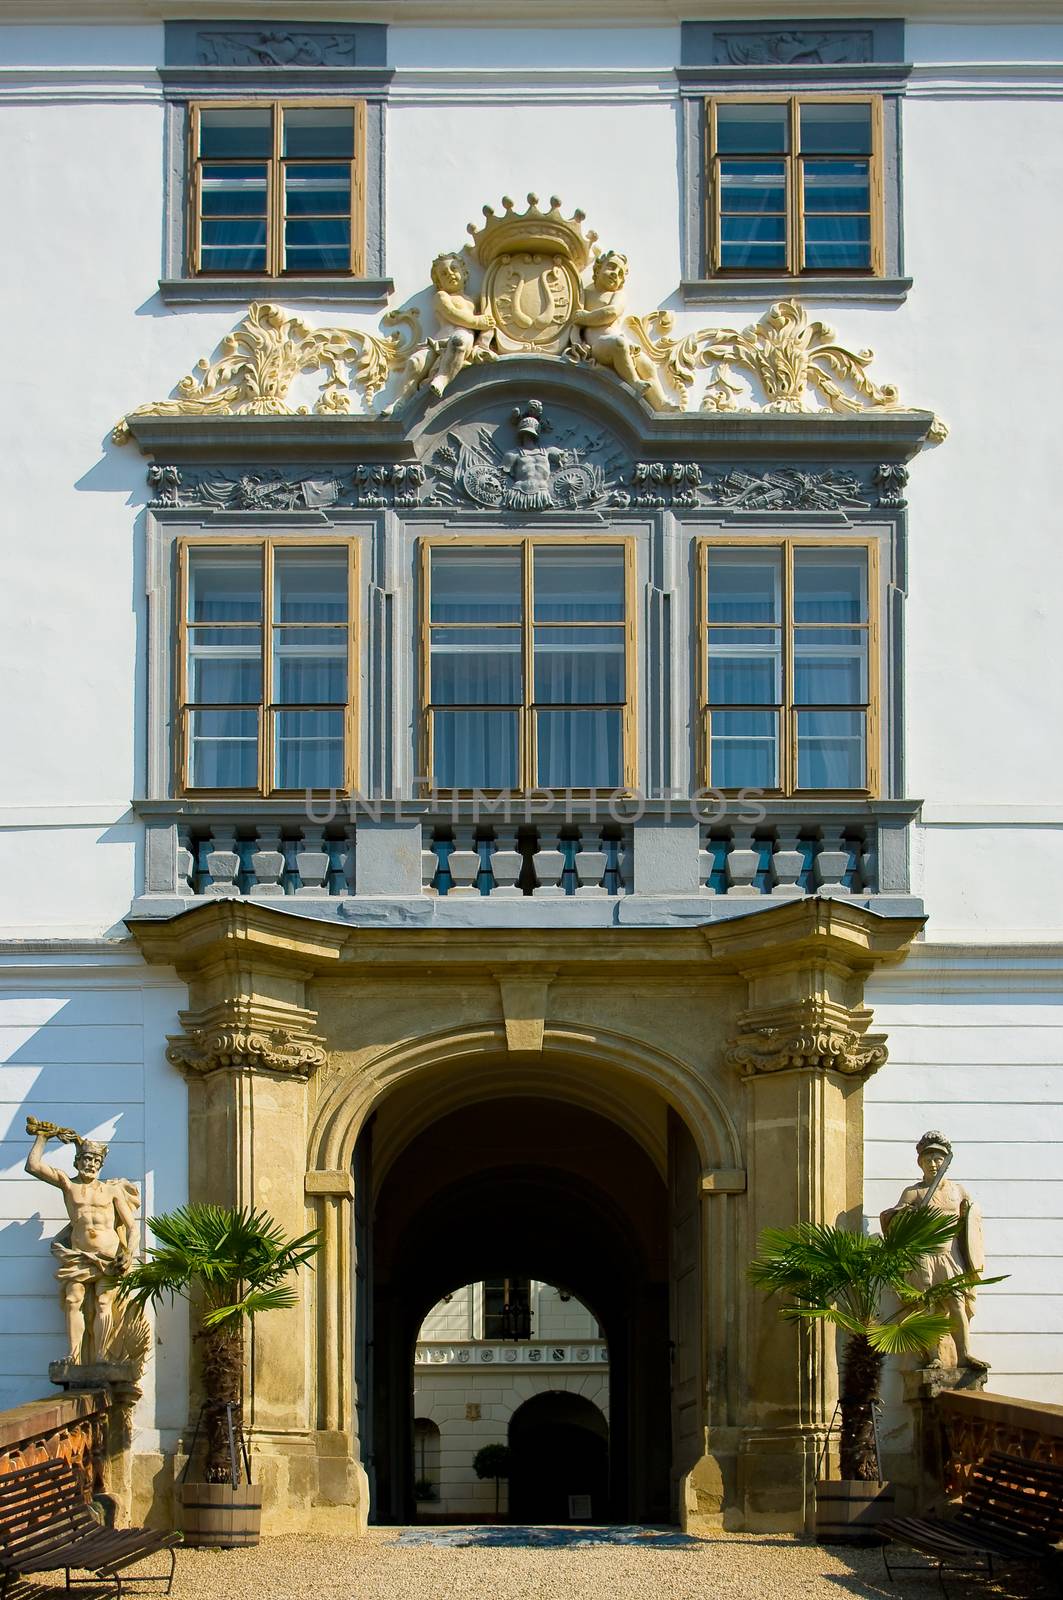 Lysice baroque castle. by zbynek